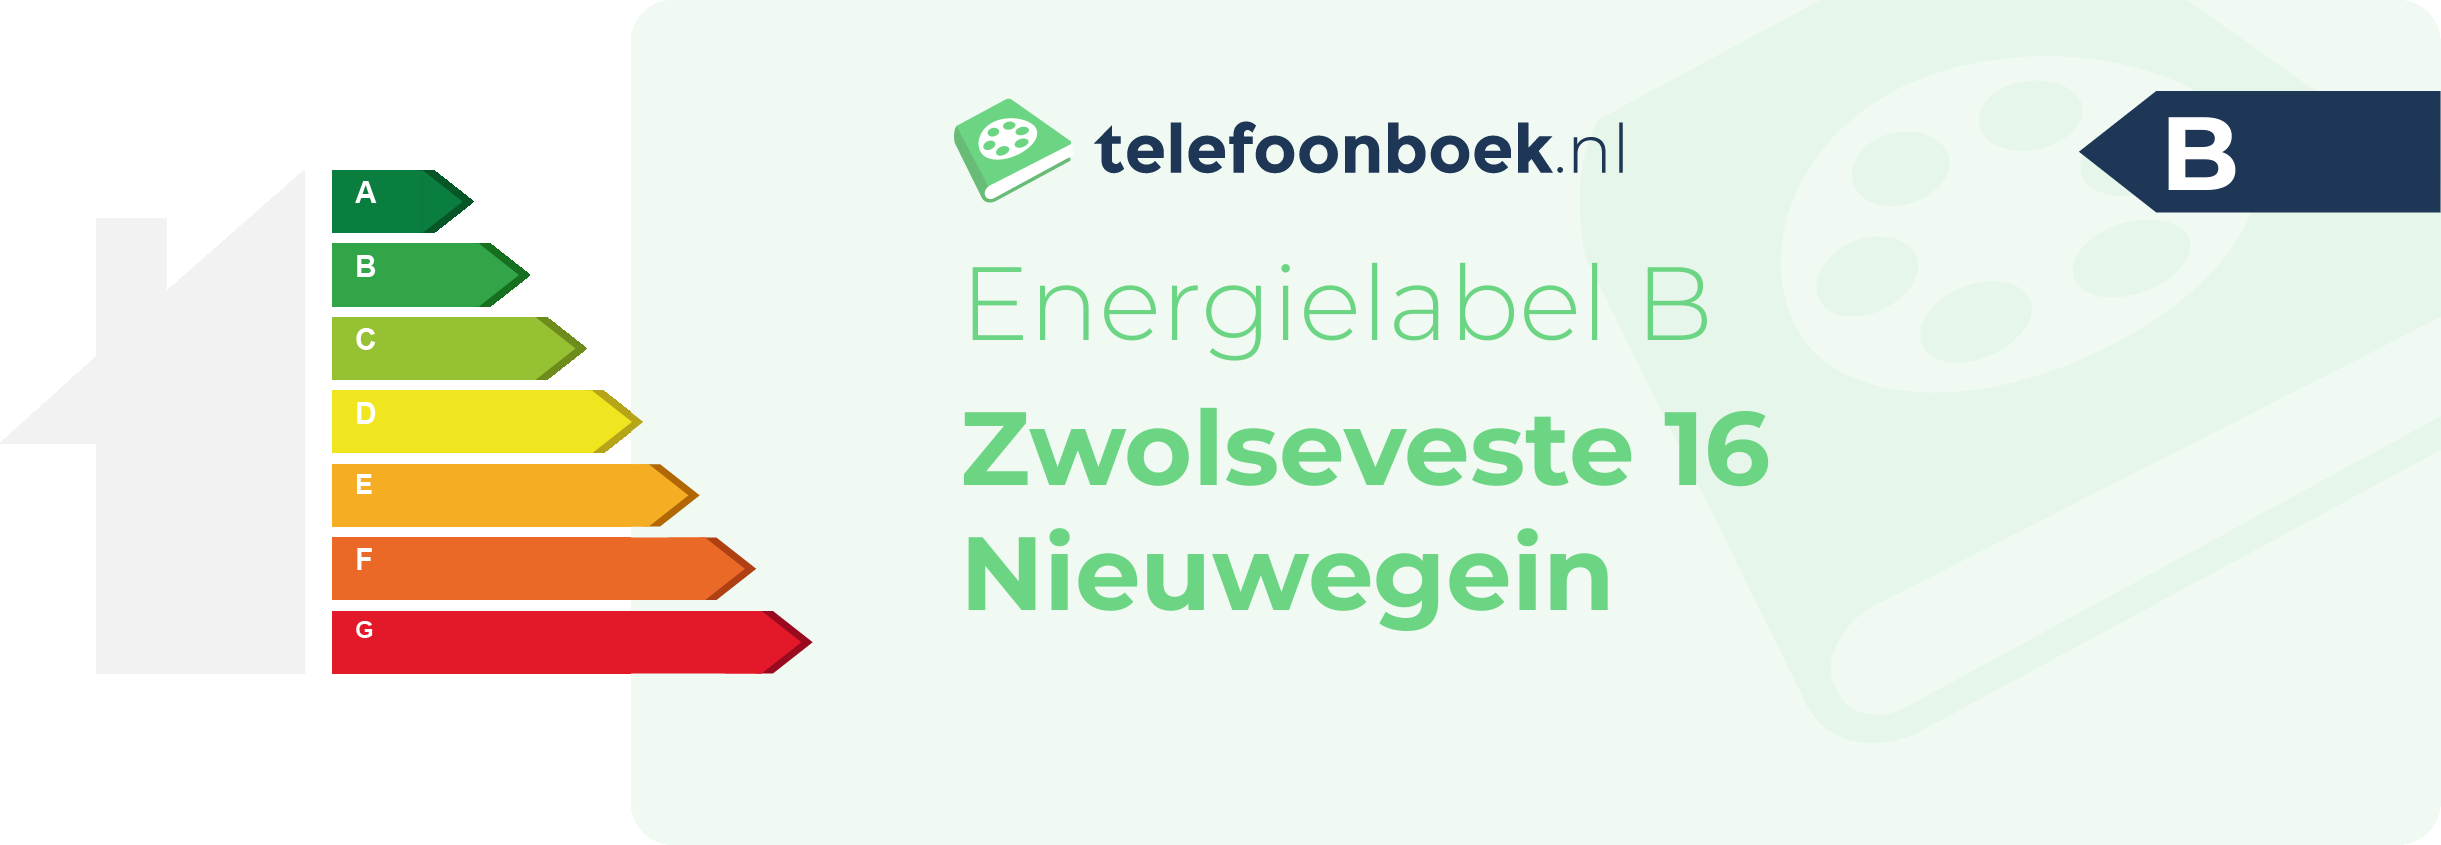 Energielabel Zwolseveste 16 Nieuwegein